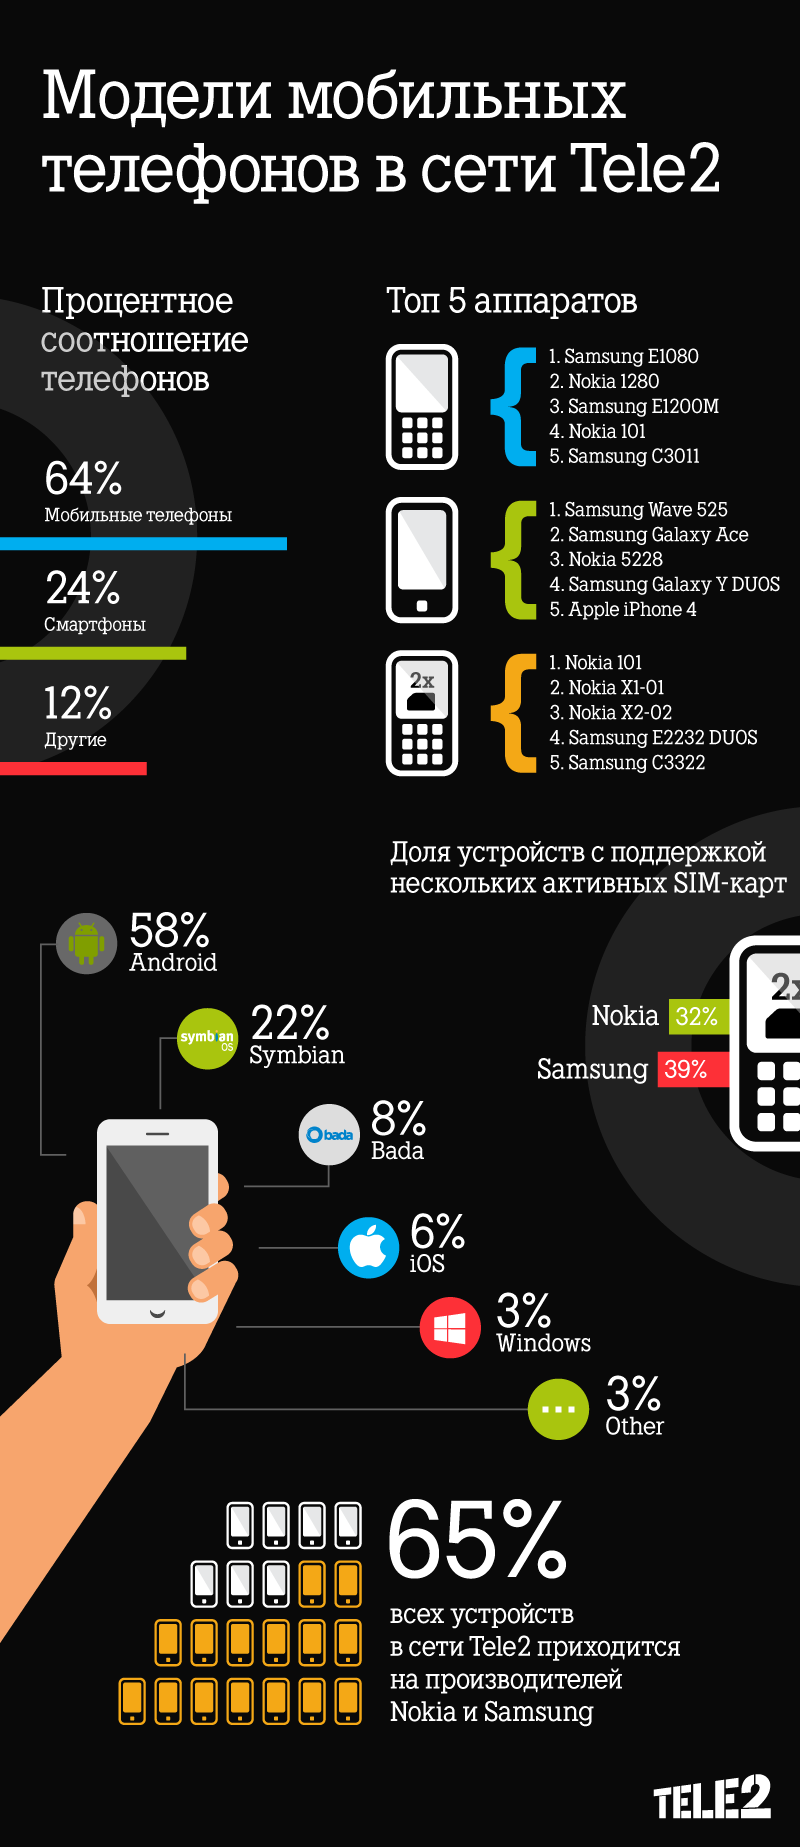 Подобрать связь мобильную. Мобильная сеть. Мобильная связь теле2. Мобильные сети в России. Примеры мобильных устройств.